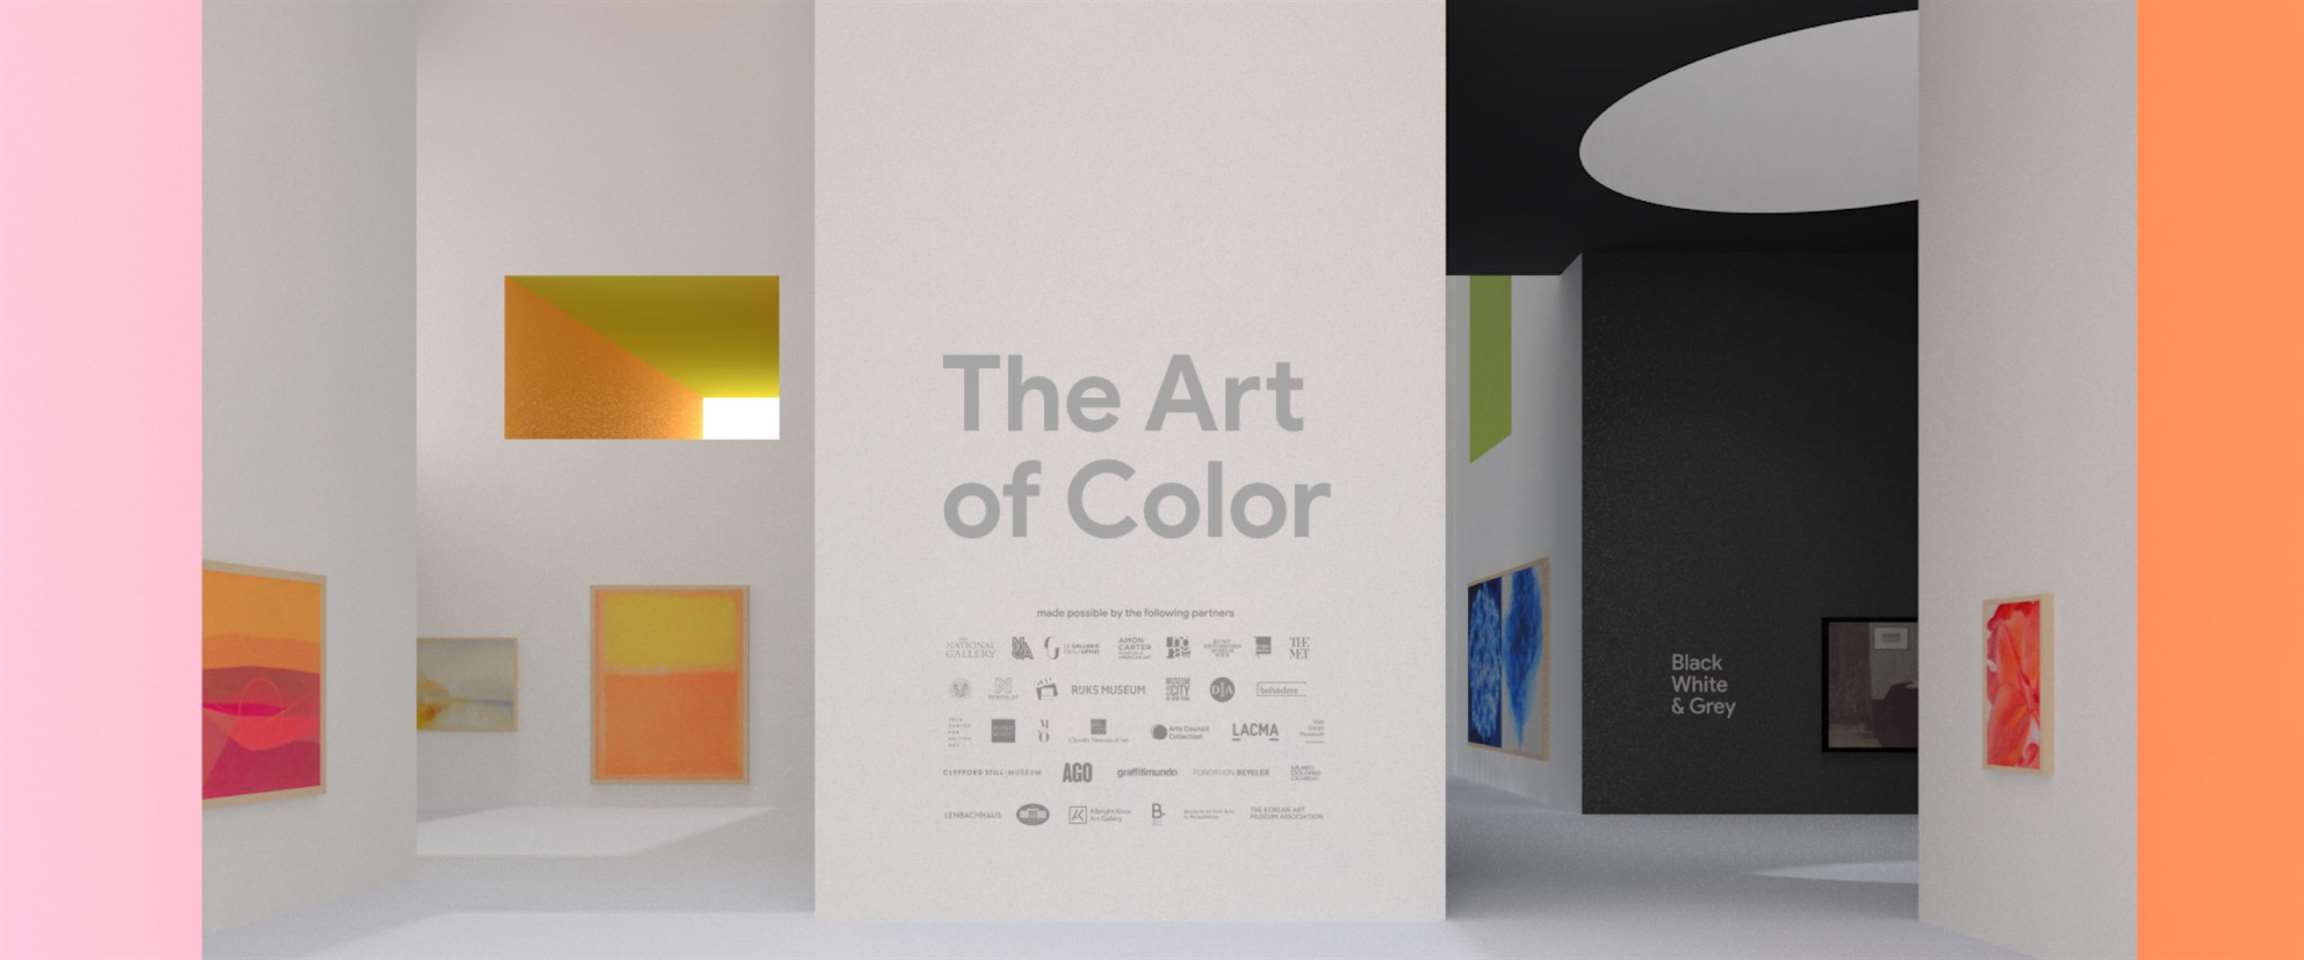 Google Arts & Culture lança galeria com Realidade Aumentada que celebra as cores na arte